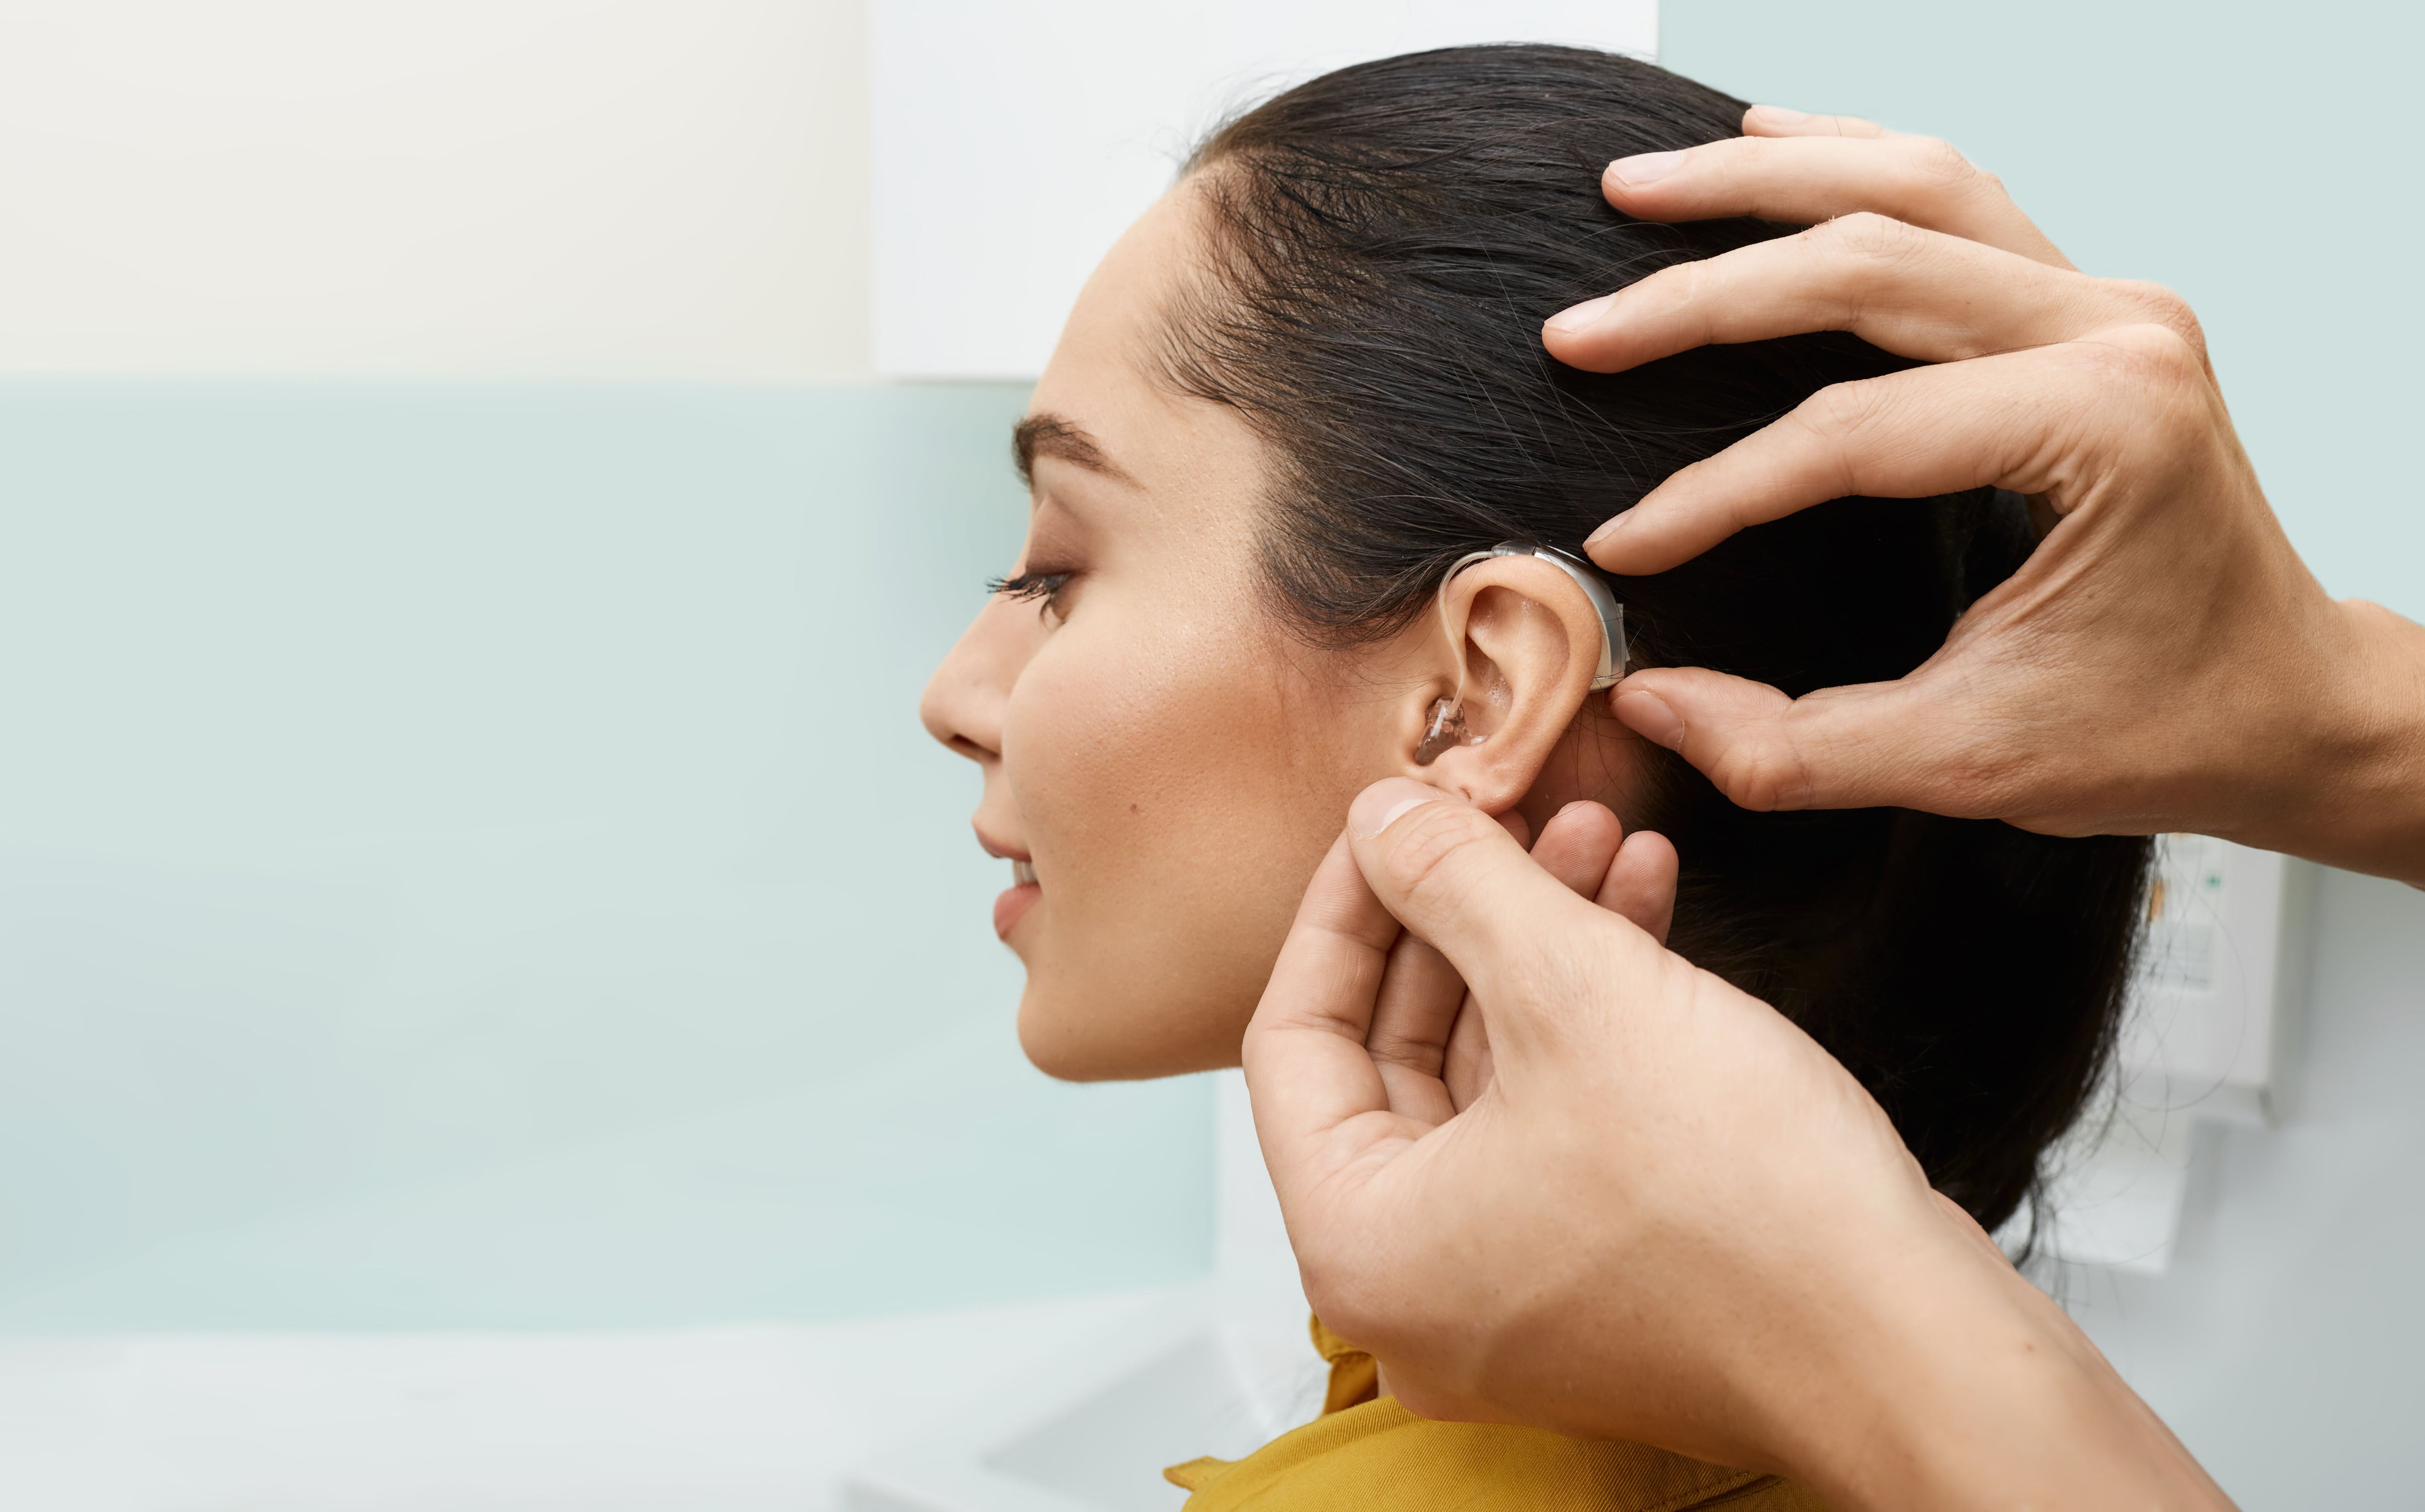 Cómo realizar una buena limpieza de oídos? Paso a paso